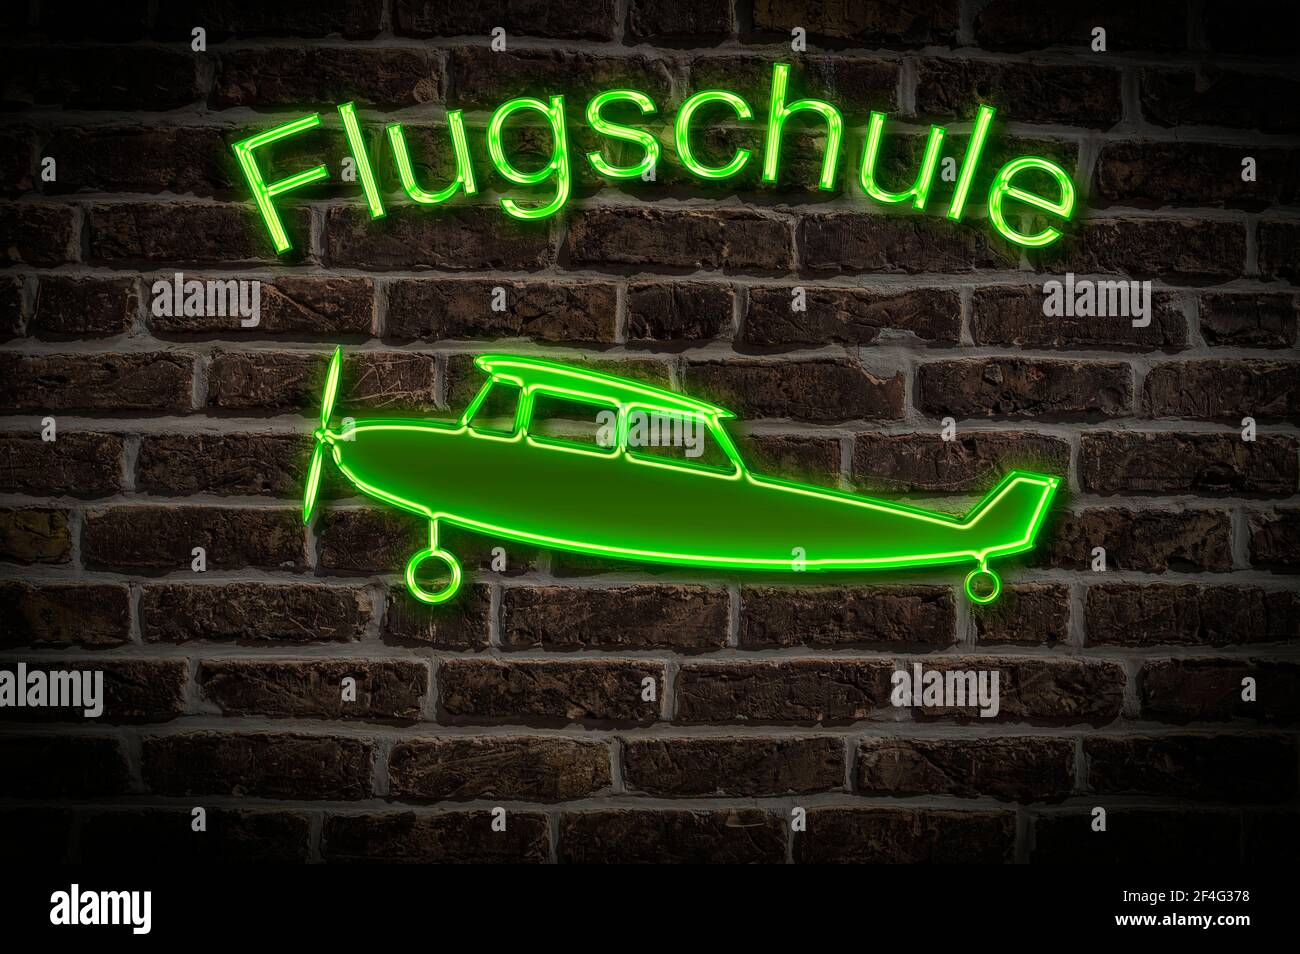 Leuchtreklame für eine Flugschule ein Flugzeug befindet sich unterhalb der Neon-Schrift | Pubblicità illuminata per una scuola di volo un aereo è Foto Stock